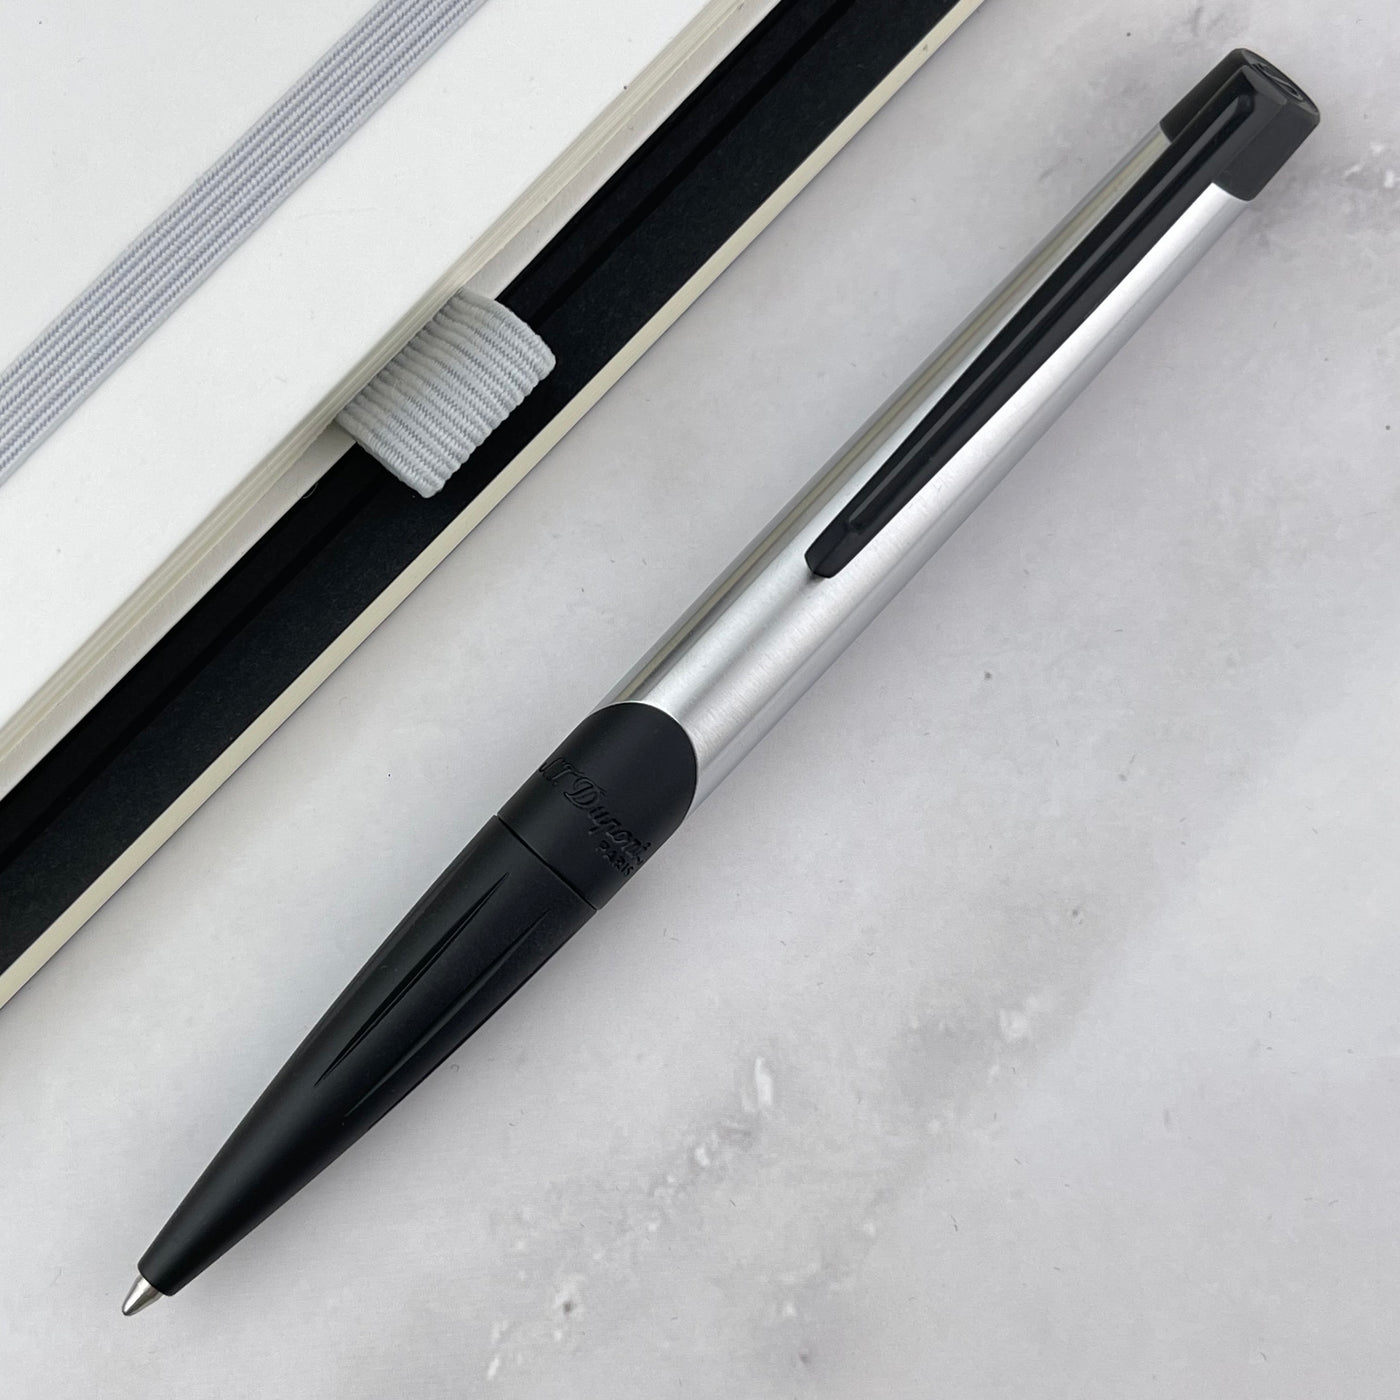 S.T. Dupont Defi Millennium Ballpoint Pen - Chrome w/ Black